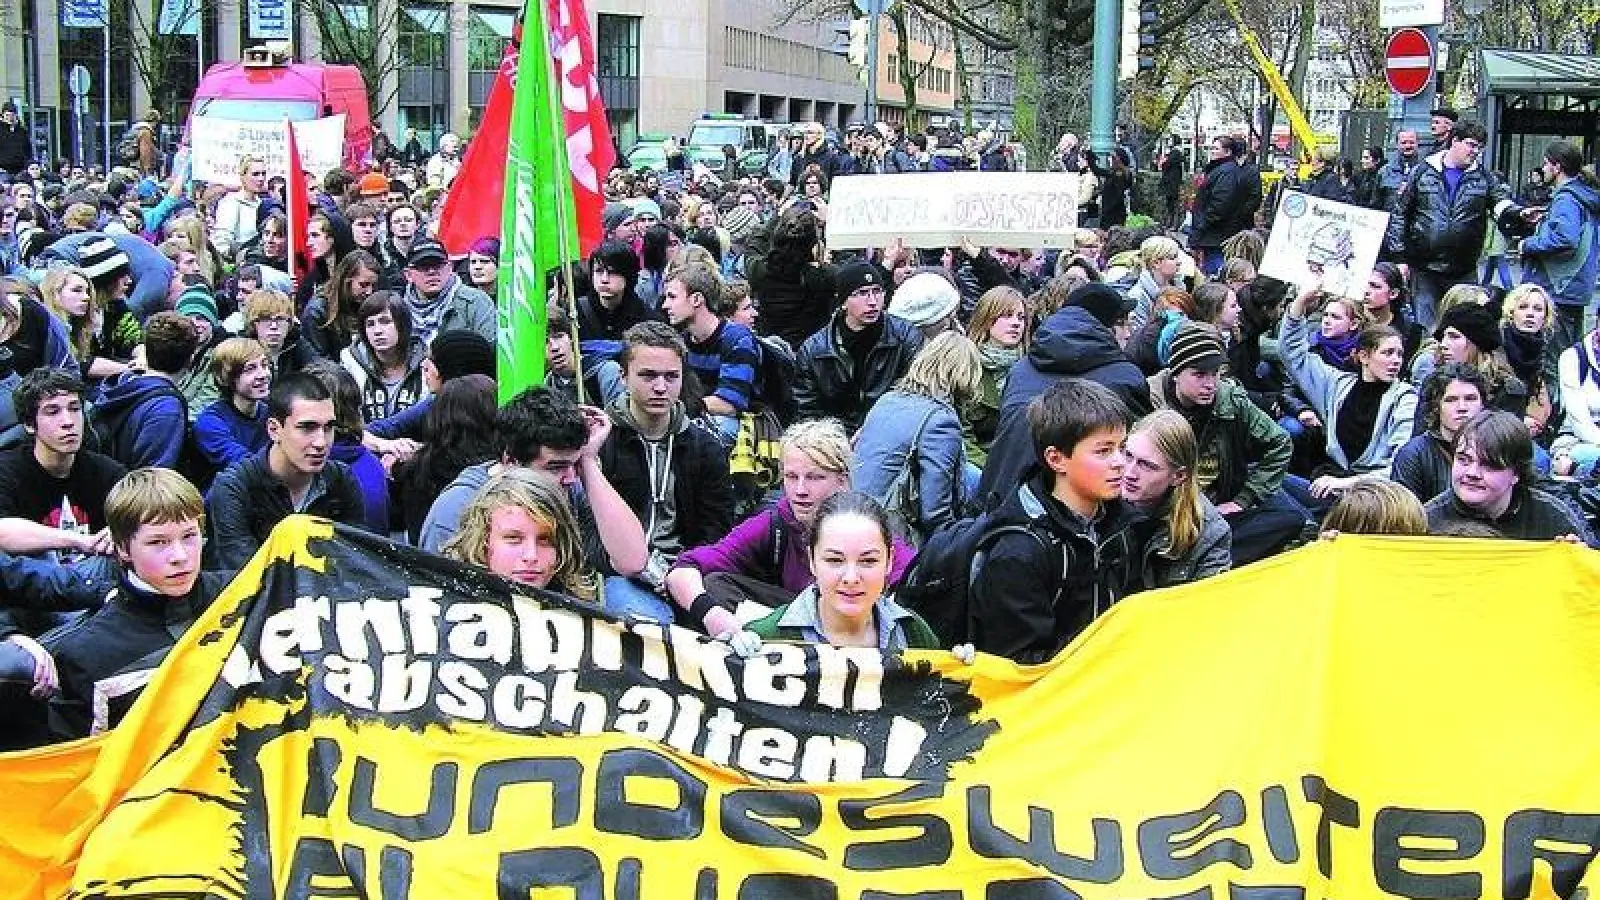 &lt;p&gt;  &lt;x_bildunterschr&gt;  &lt;b&gt;Lernfabriken abschalten:  &lt;/b&gt;In Augsburg gingen gestern 1000 Studenten und Schüler auf die Straße, um gegen die Missstände im Bildungswesen zu demonstrieren. Am Königsplatz bildeten sie für kurze Zeit eine Sitzblockade, die die Busse und Straßenbahnen am Wegfahren hinderten. Insgesamt verlief die Demonstration friedlich. &lt;tab/&gt;Foto: Liebmann &lt;/x_bildunterschr&gt;  &lt;/p&gt;